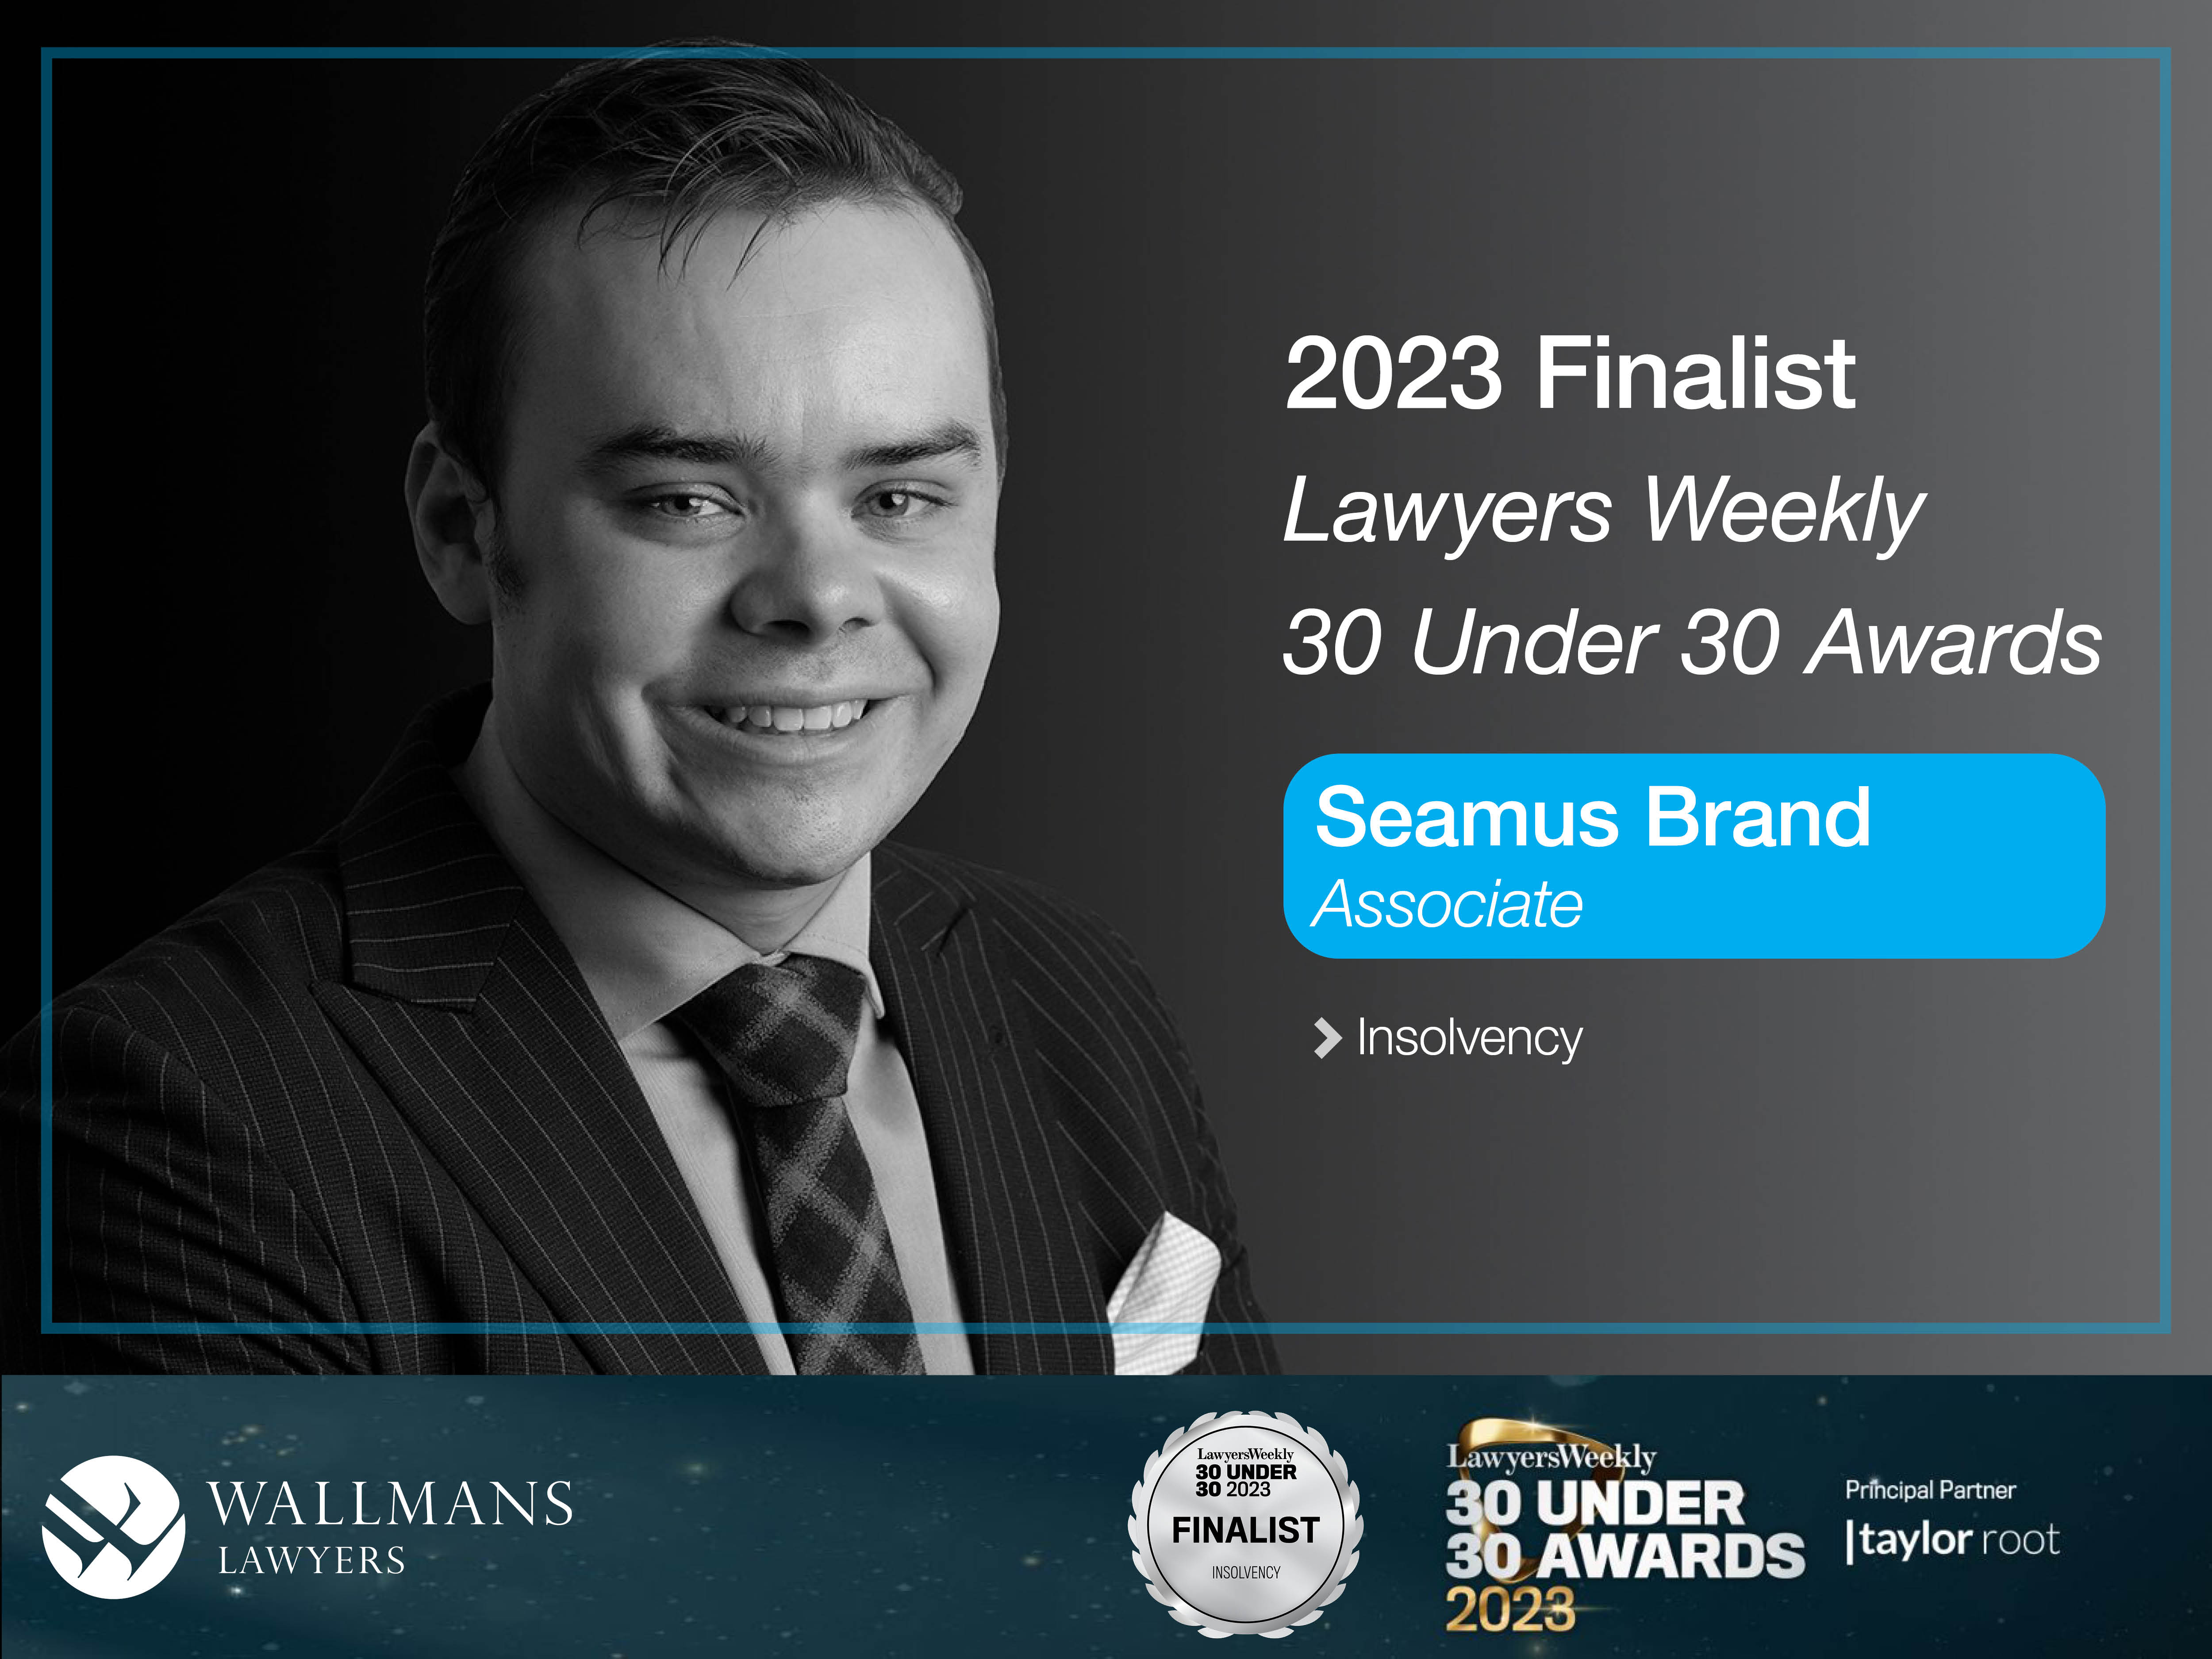 Seamus Brand finalist in 30 under 30 awards